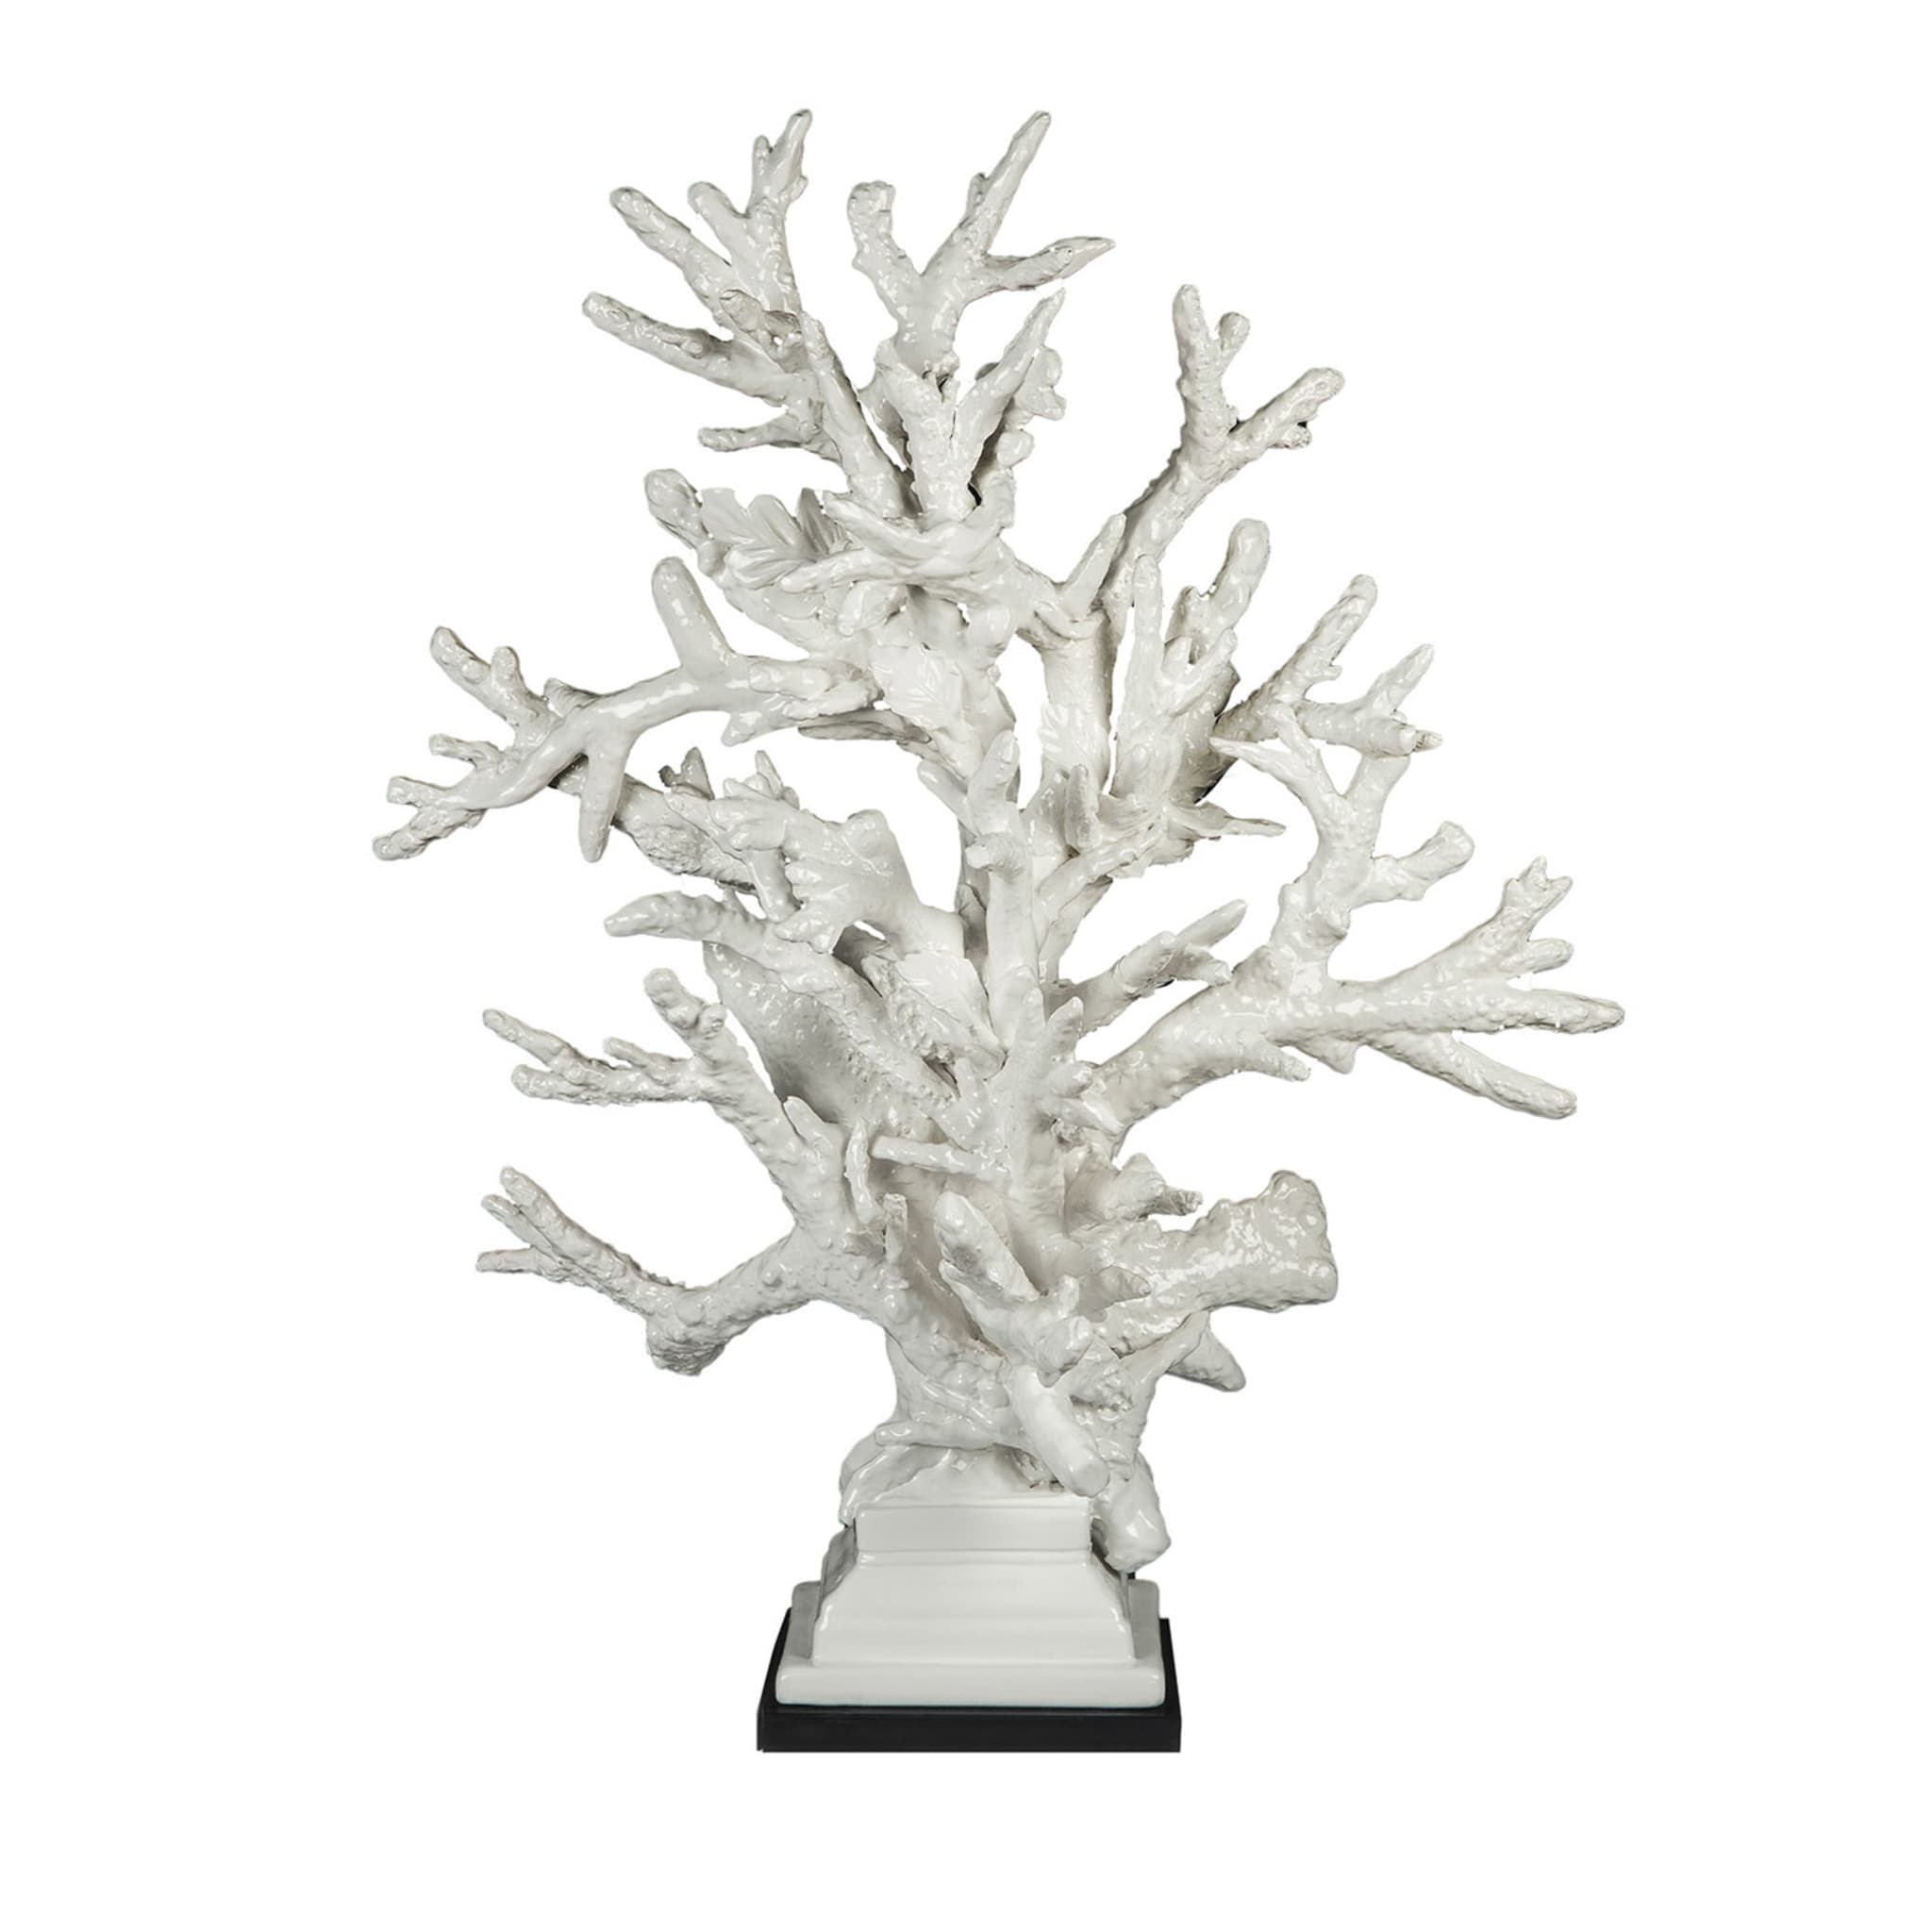 Escultura Coralli White de Antonio Fullin - Vista principal